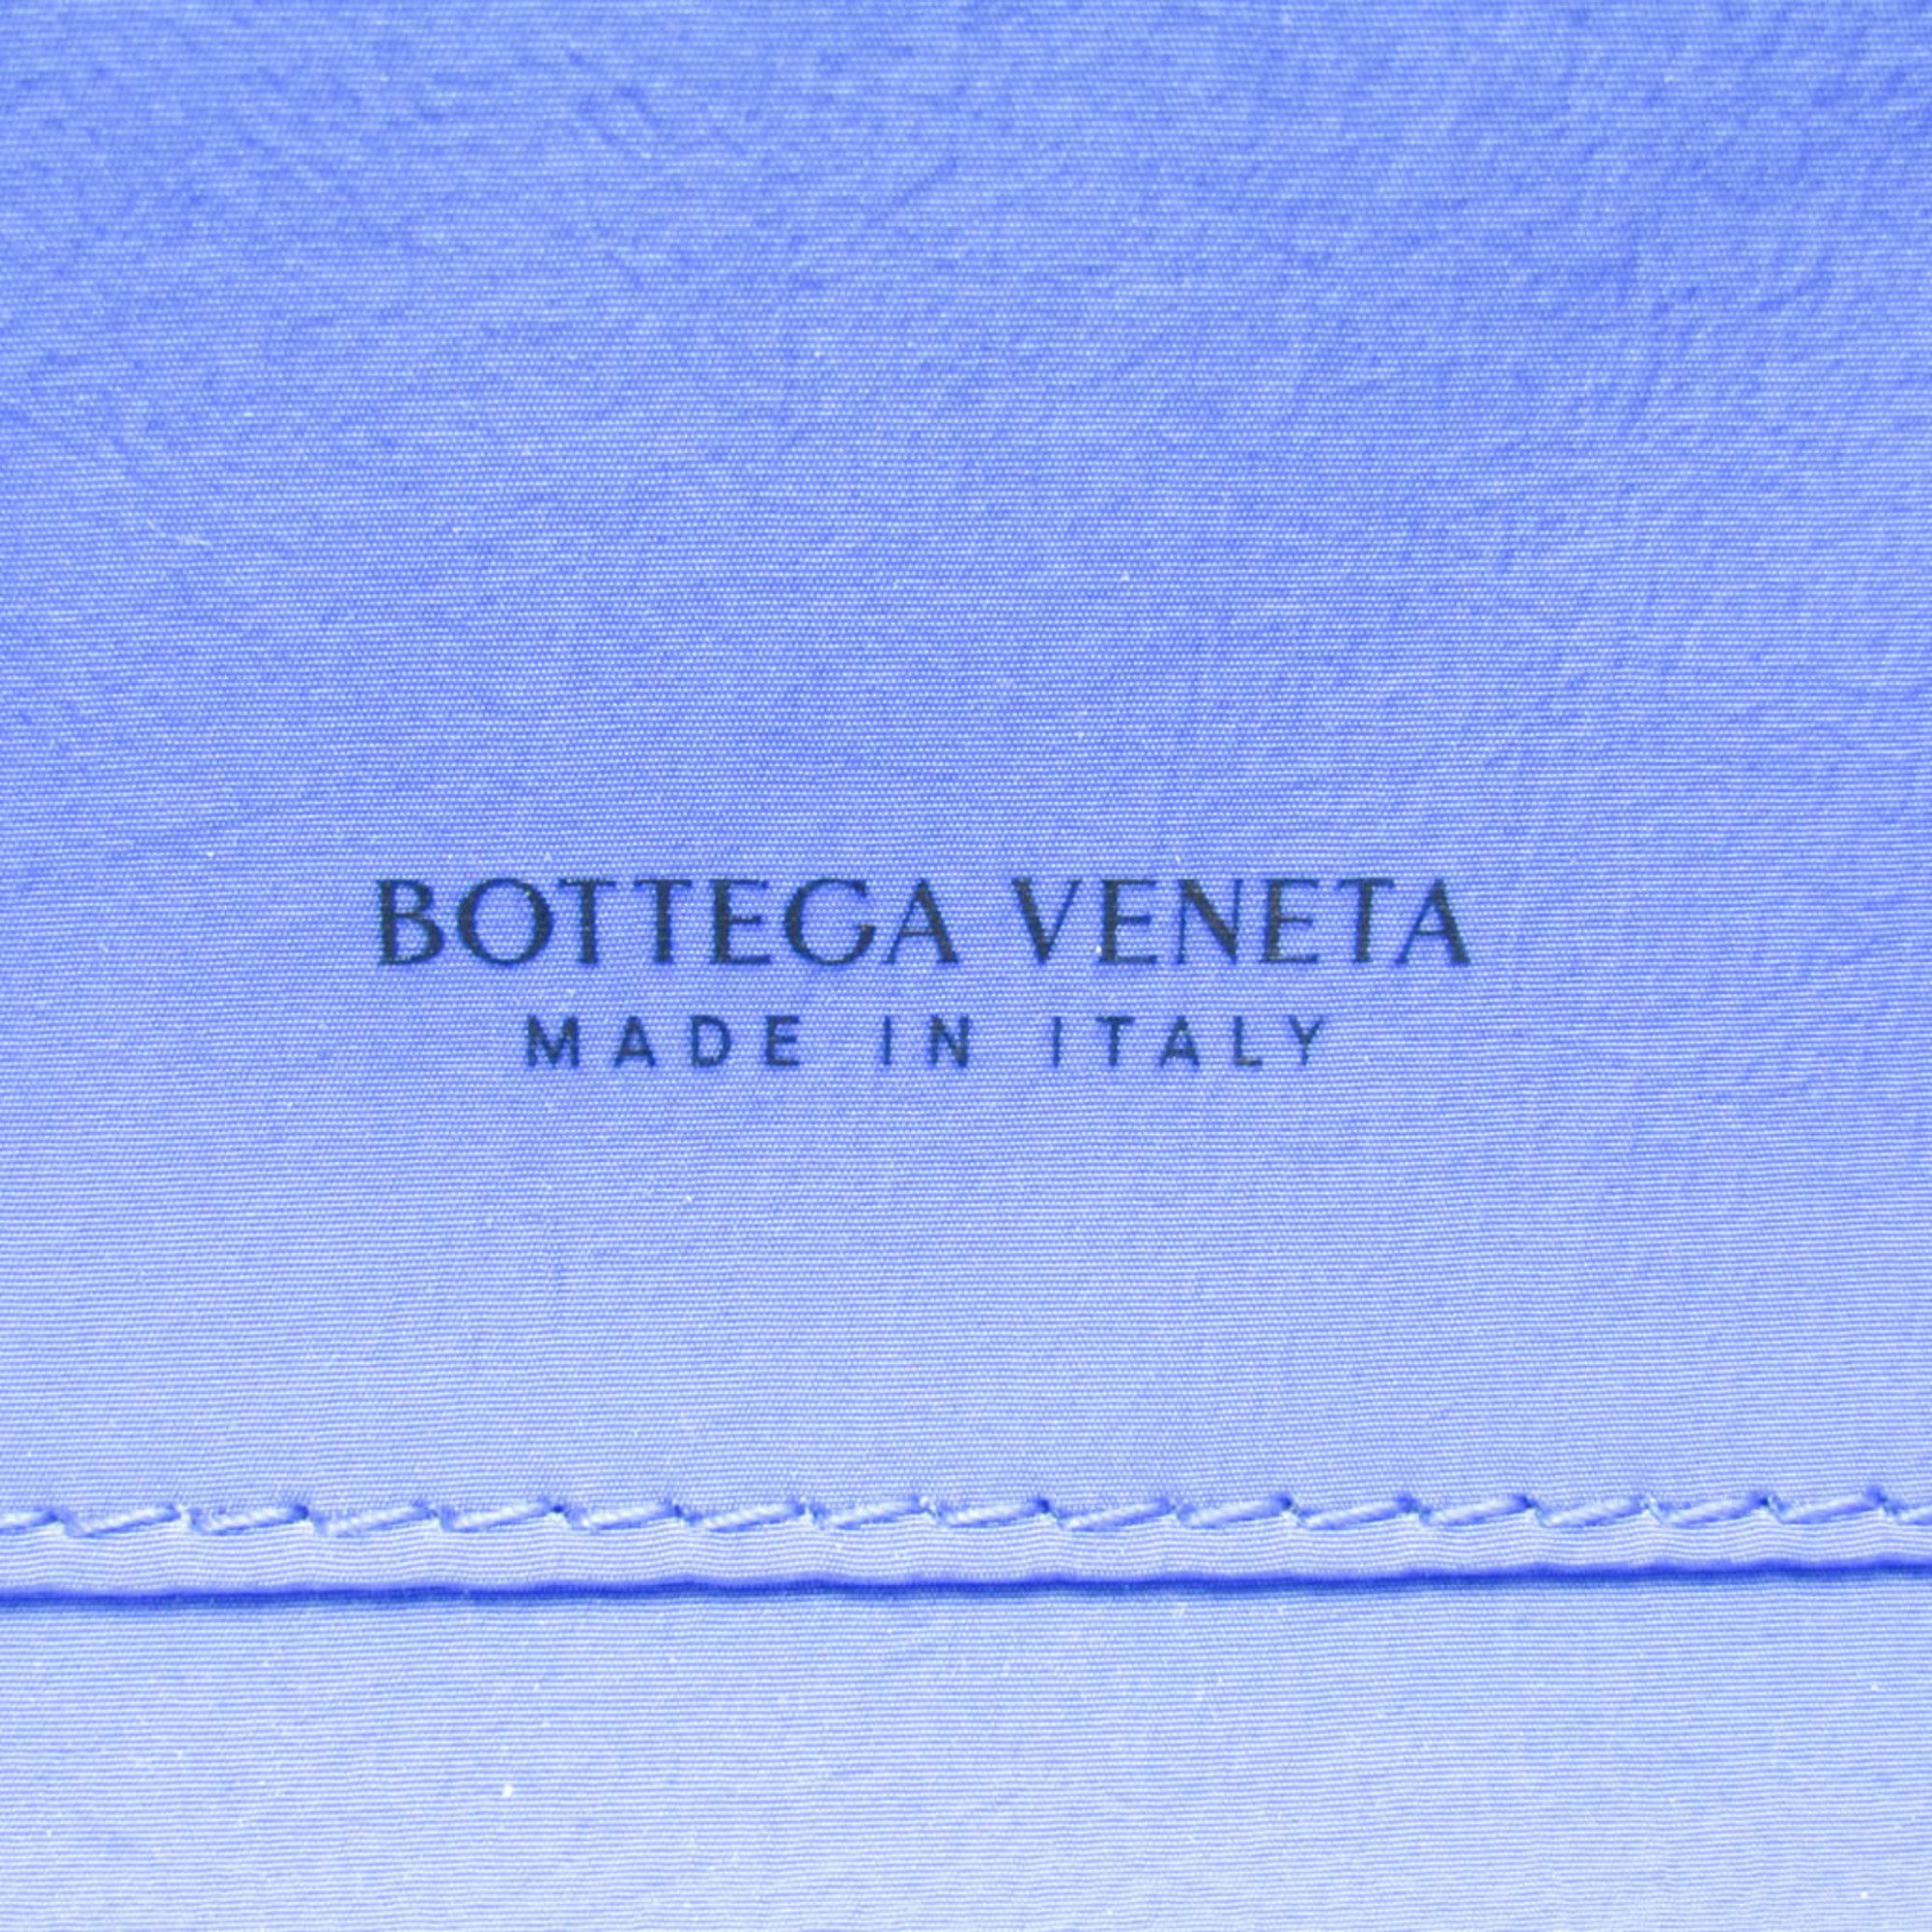 ボッテガ・ヴェネタ(Bottega Veneta) オーガナイザー 666770 レディース,メンズ レザー クラッチバッグ,ポーチ ブルー